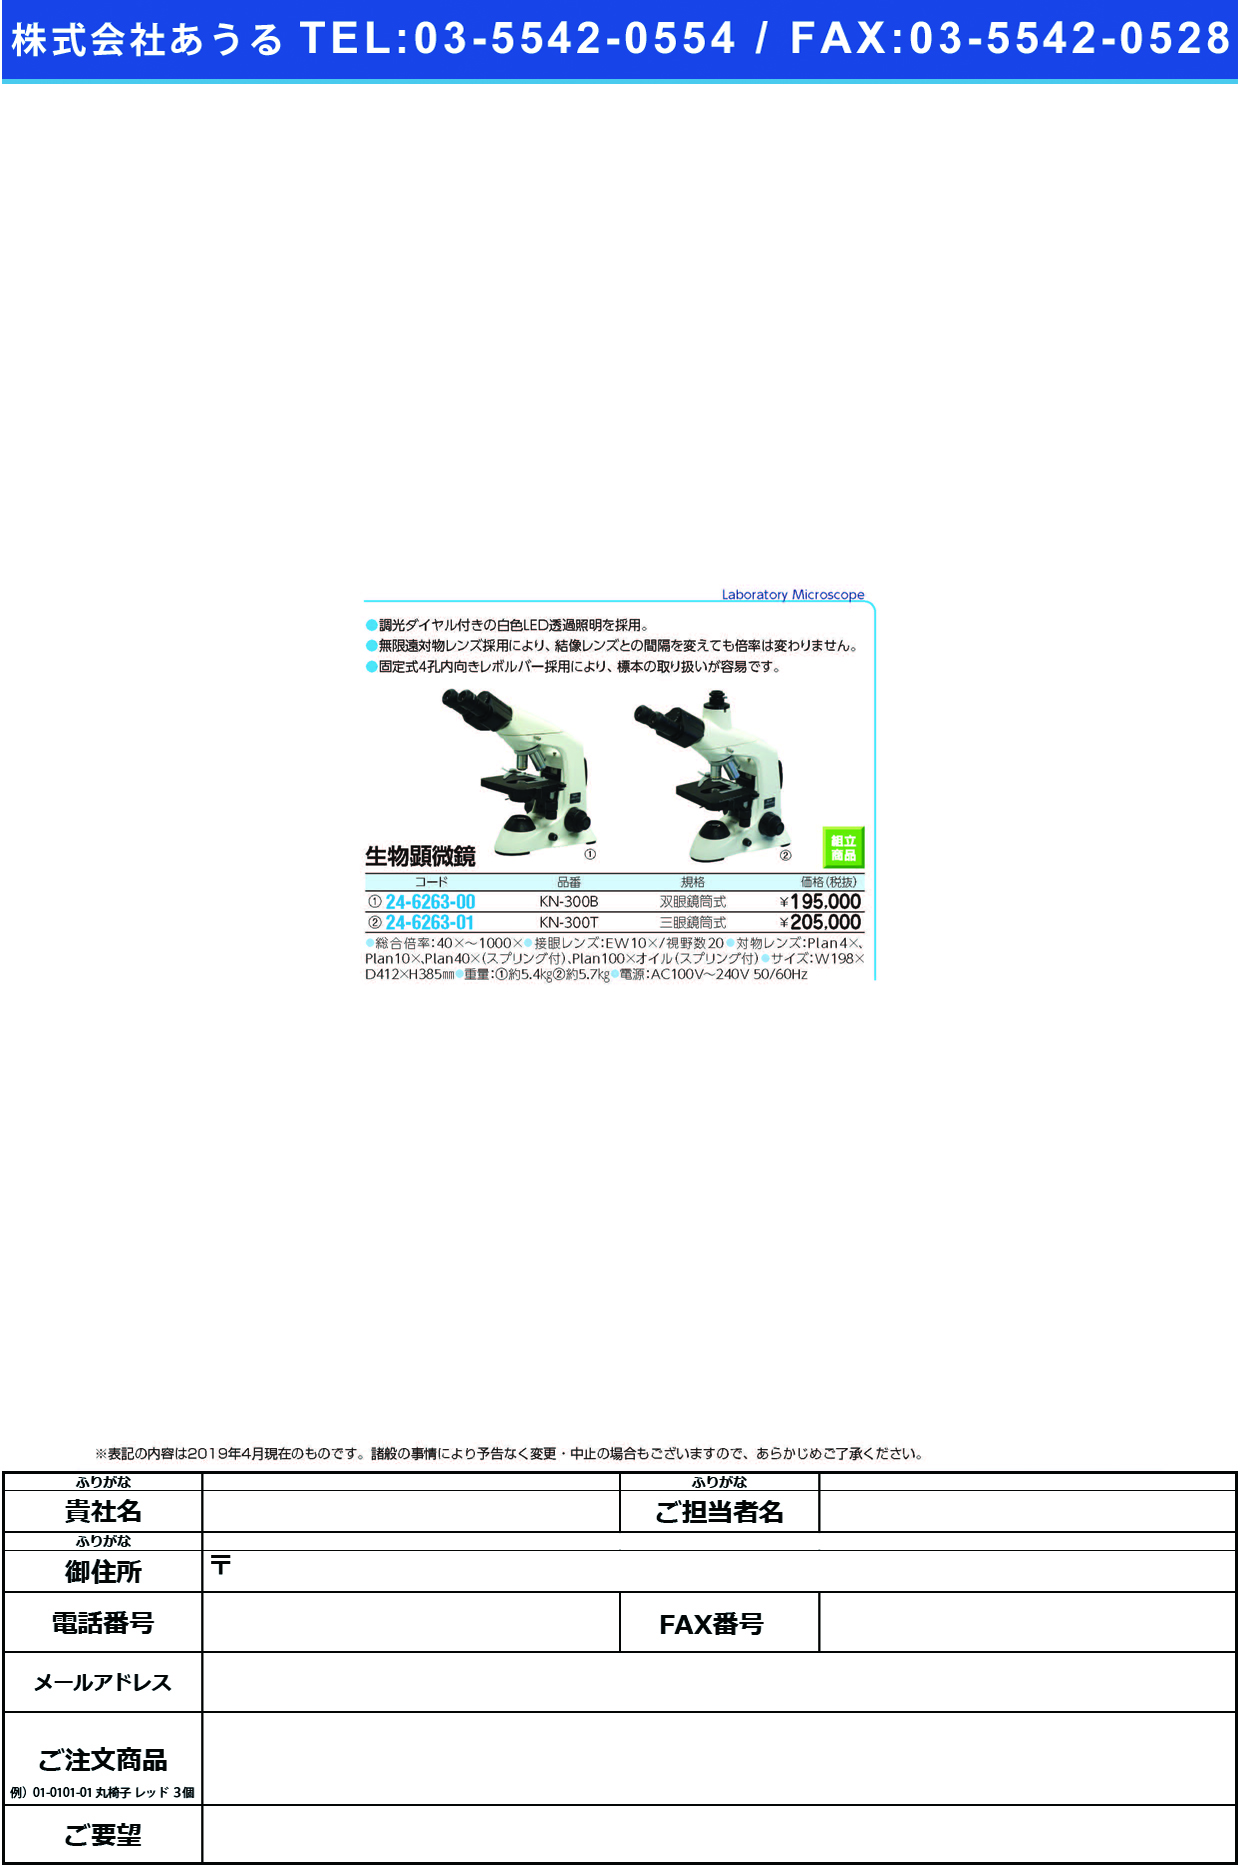 (24-6263-01)生物顕微鏡三眼鏡筒式 KN-300T ｾｲﾌﾞﾂｹﾝﾋﾞｷｮｳｻﾝｶﾞﾝｷｮｳ【1台単位】【2019年カタログ商品】